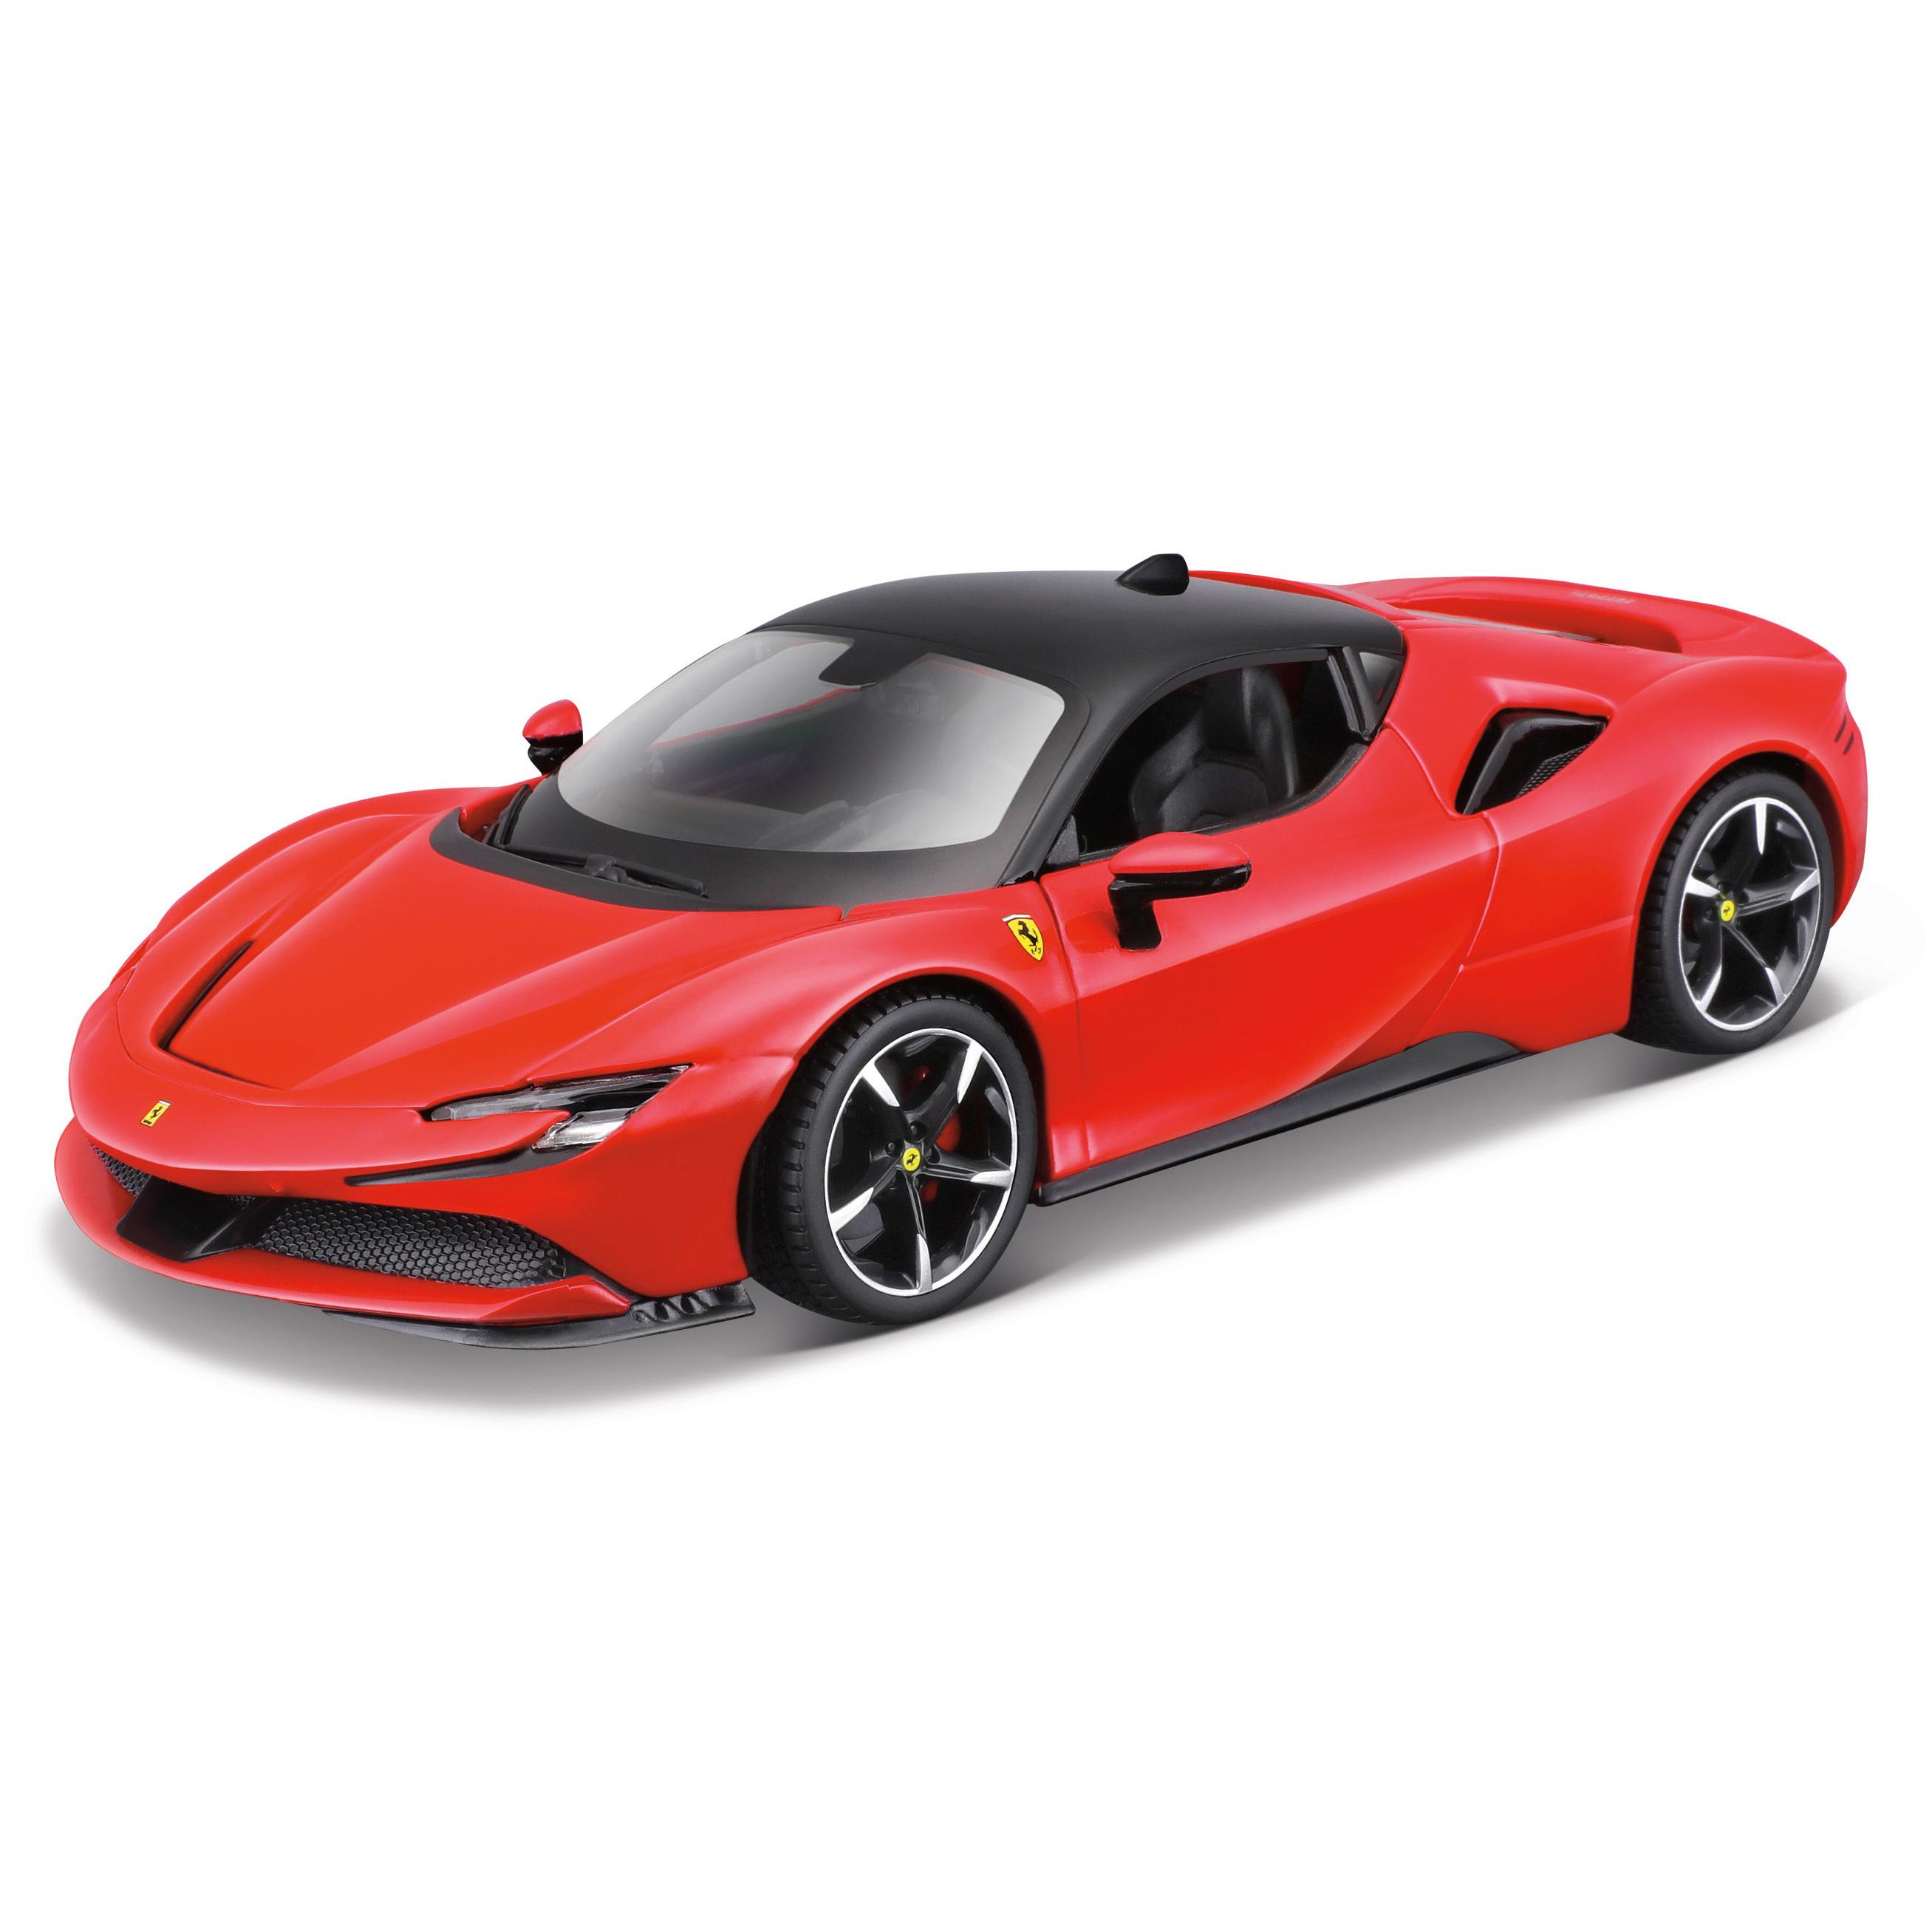 Игрушечная машинка Maisto сборная Ferrari SF90 Stradale, 1:24, красная 39137 игрушечная гоночная машинка красная